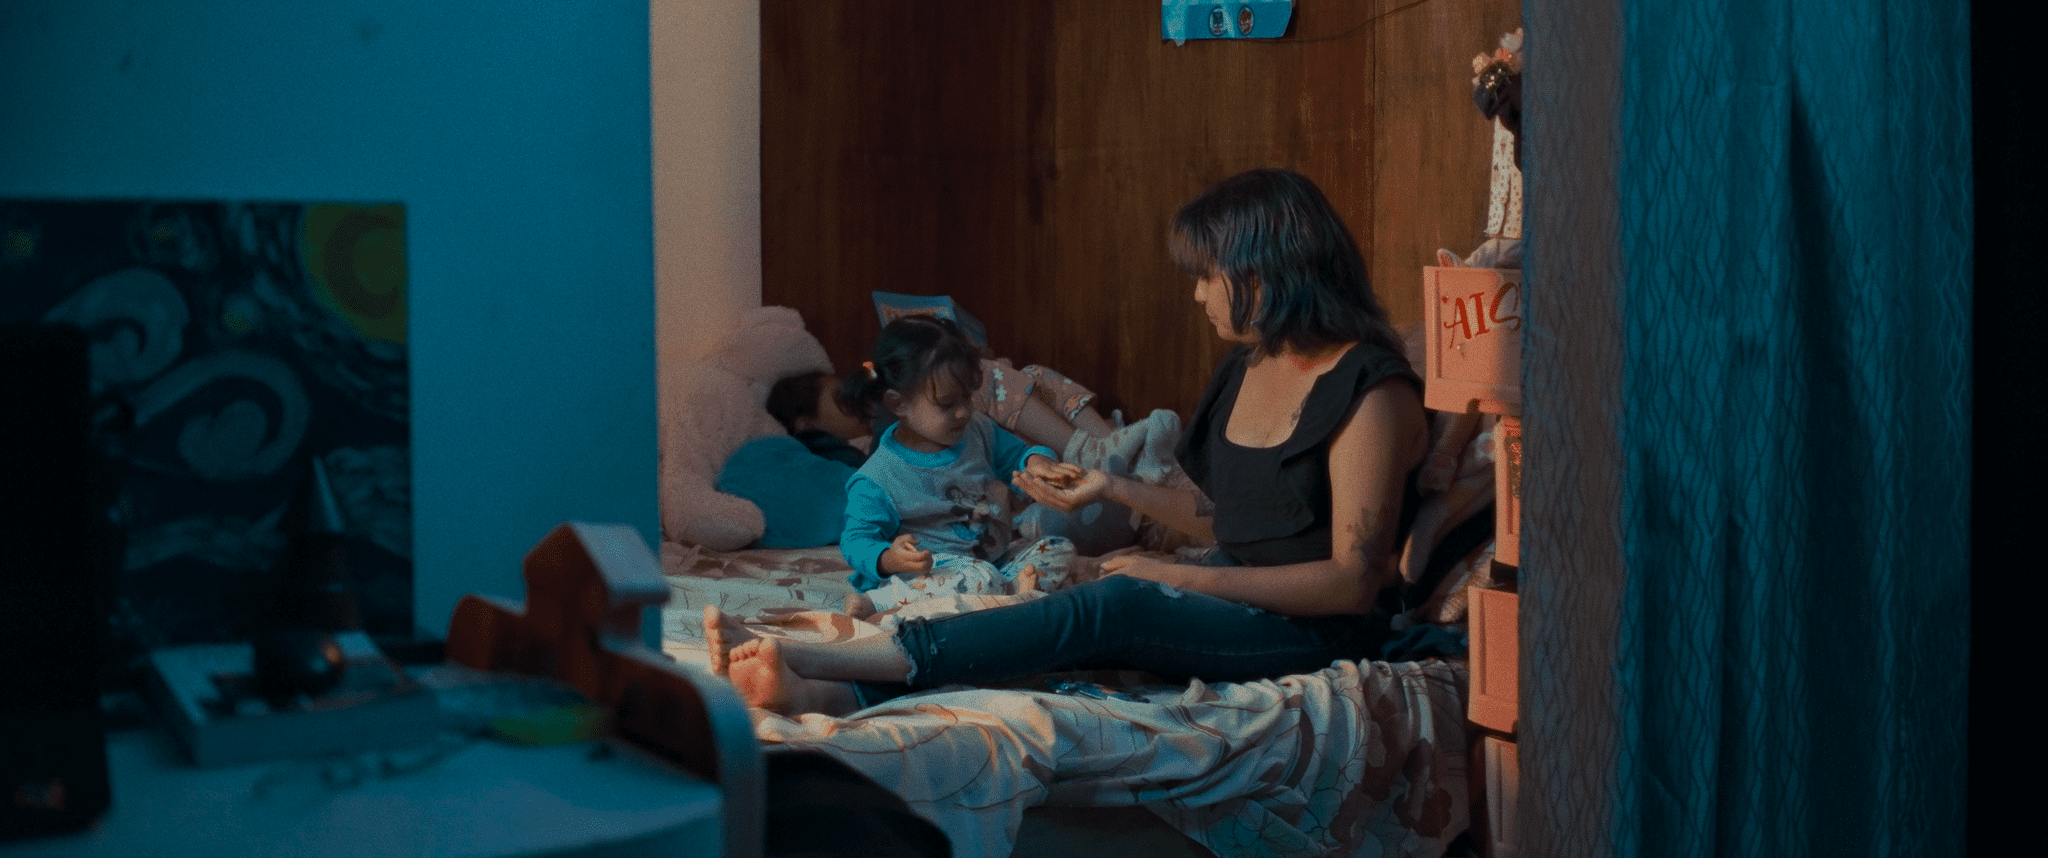 La Otra Ola, el corto documental que retrata las vicisitudes del exilio en Costa Rica